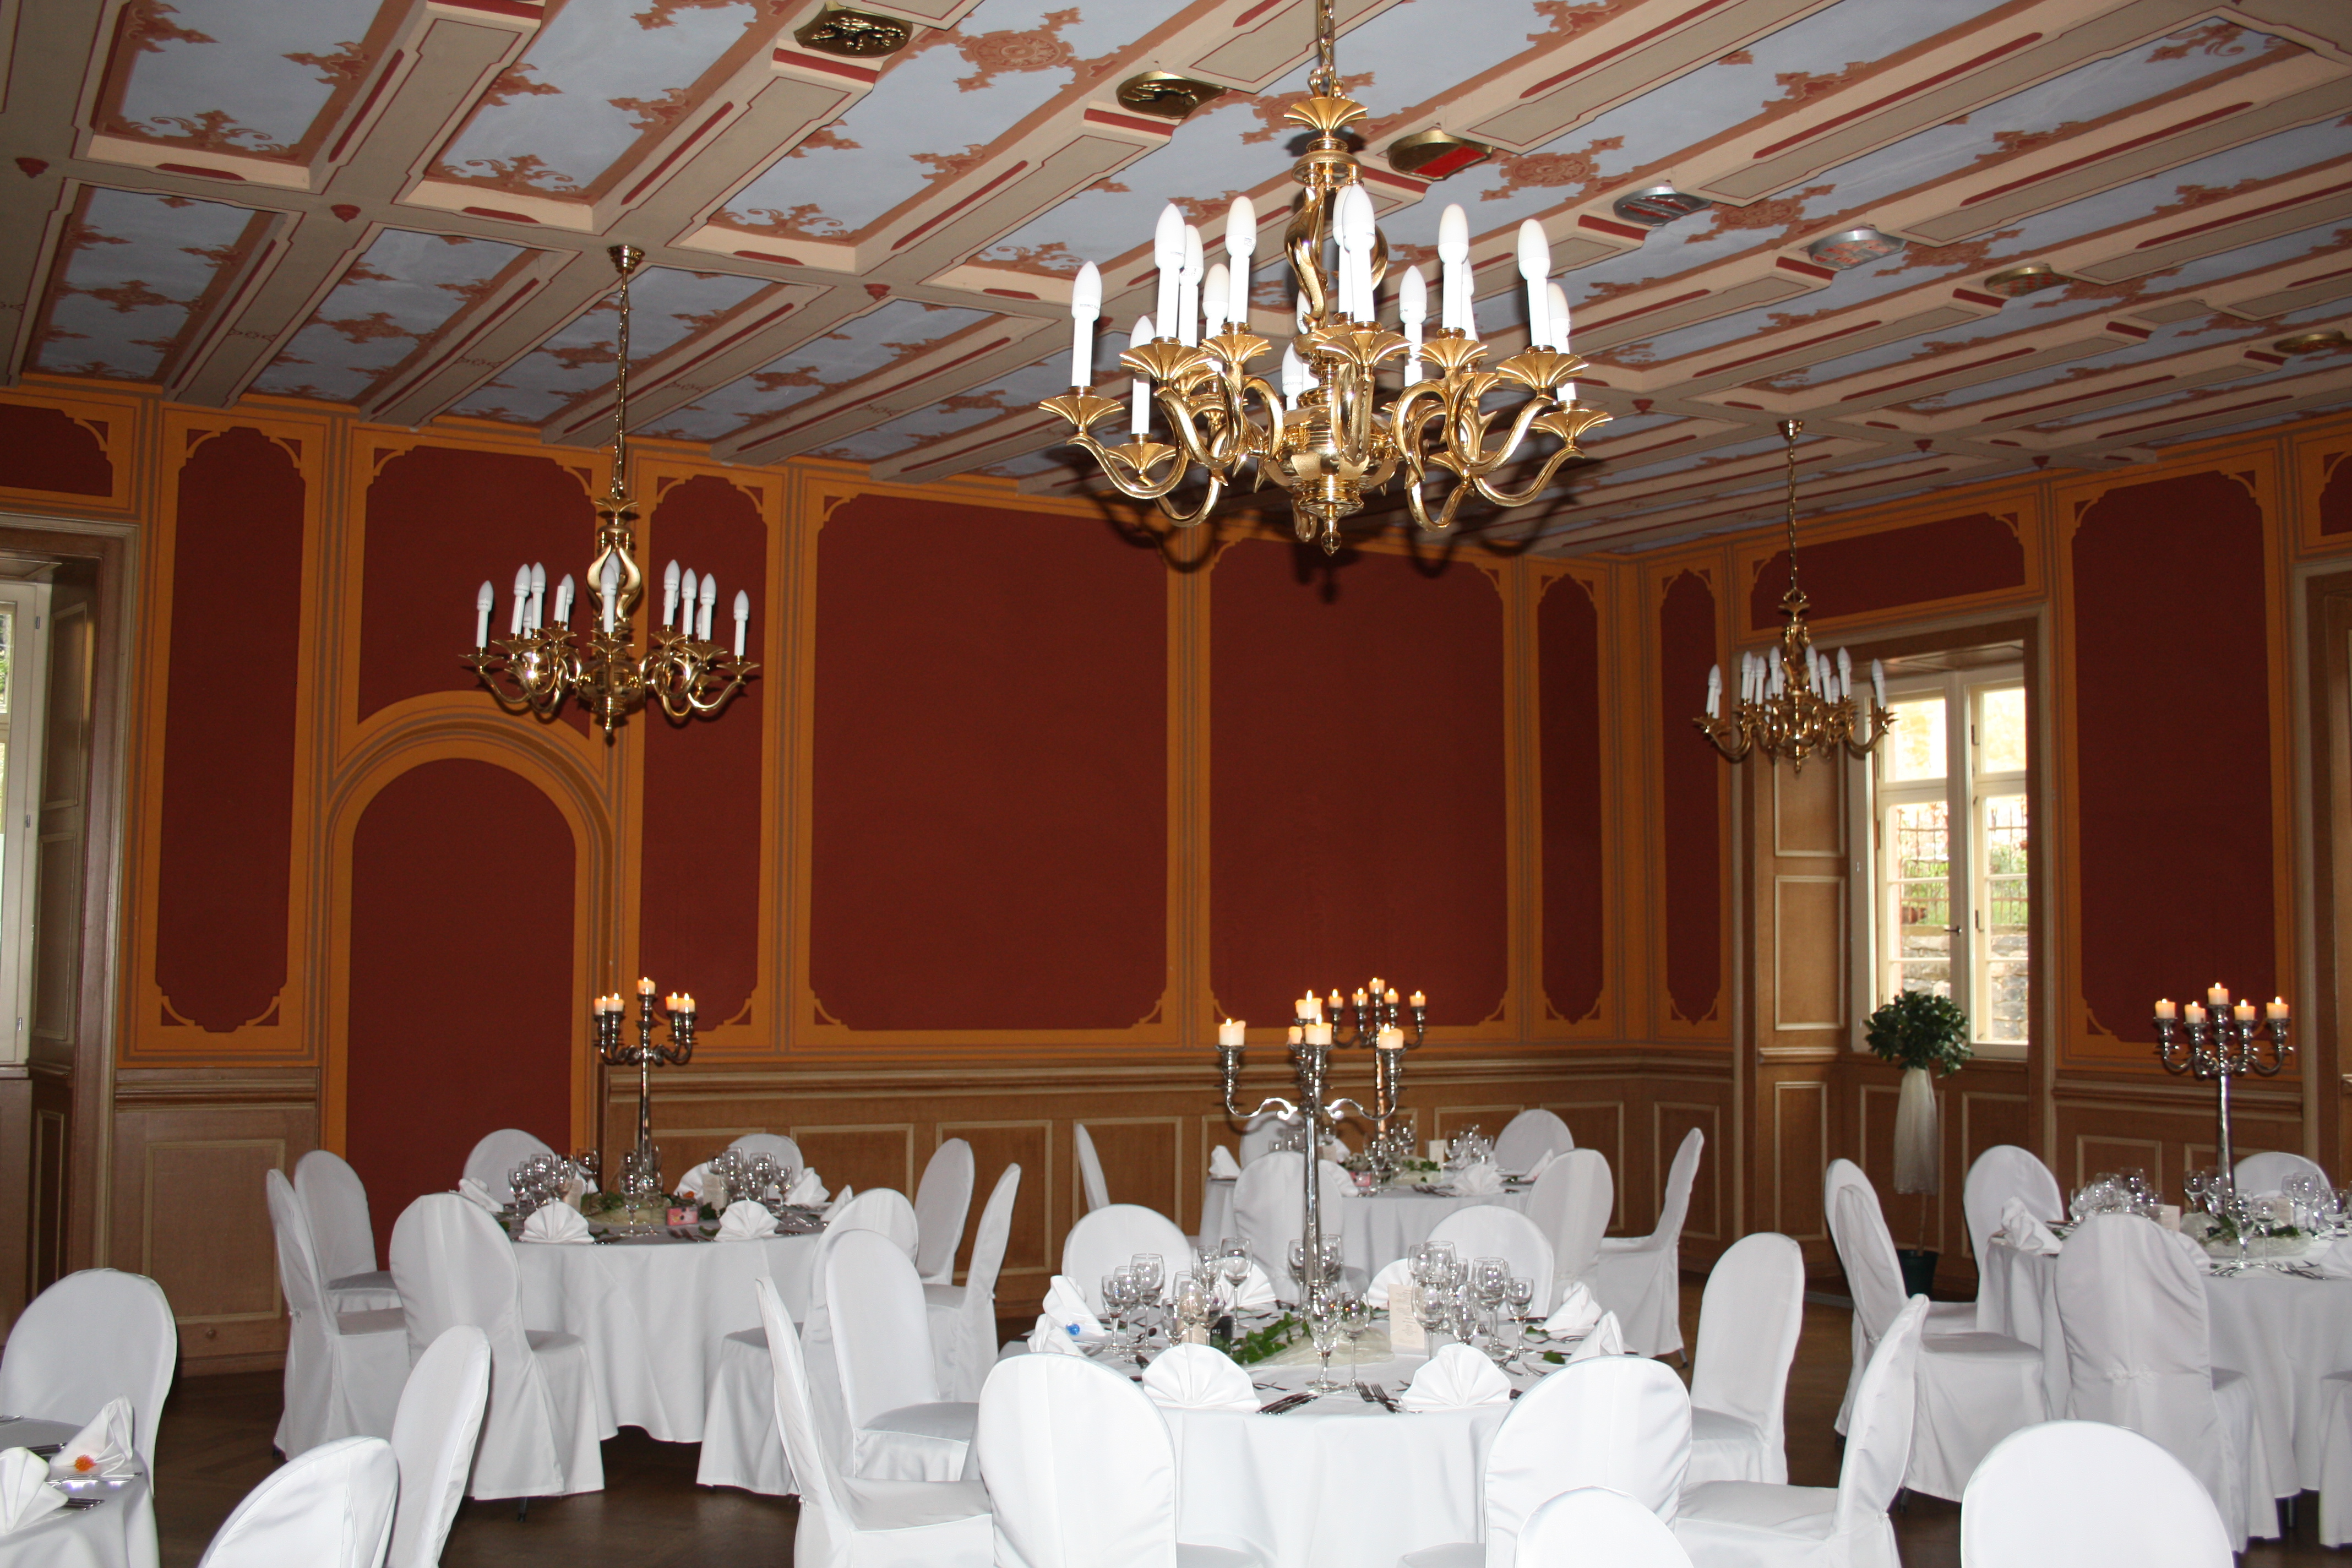 Besonders die eingelassenen Wappen in der Holzdecke machen den Wappensaal, welcher besonders gerne zu Hochzeiten und Tagungen gemietet bzw. genutzt wird, zu einem Schmucksaal.
